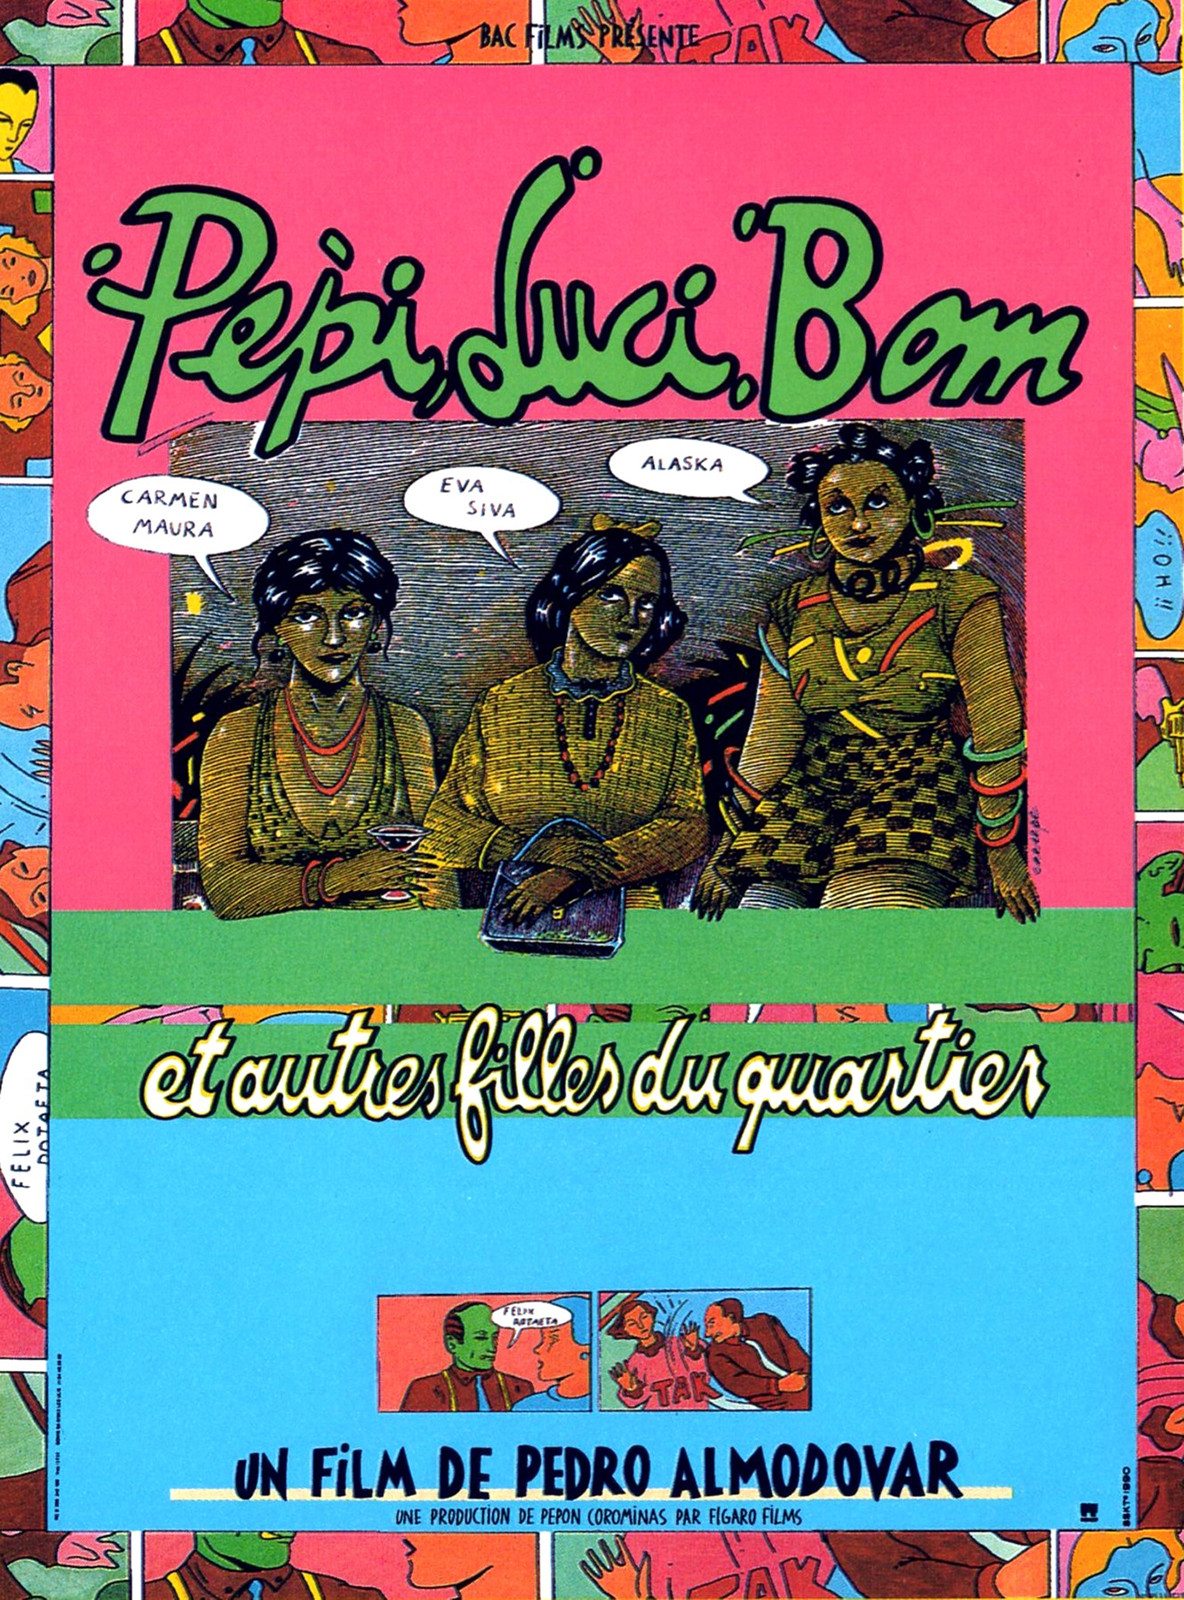 Affiche du film "Pepi, Luci, Bom et autres filles du quartier" (1980 de Pedro Almodóvar